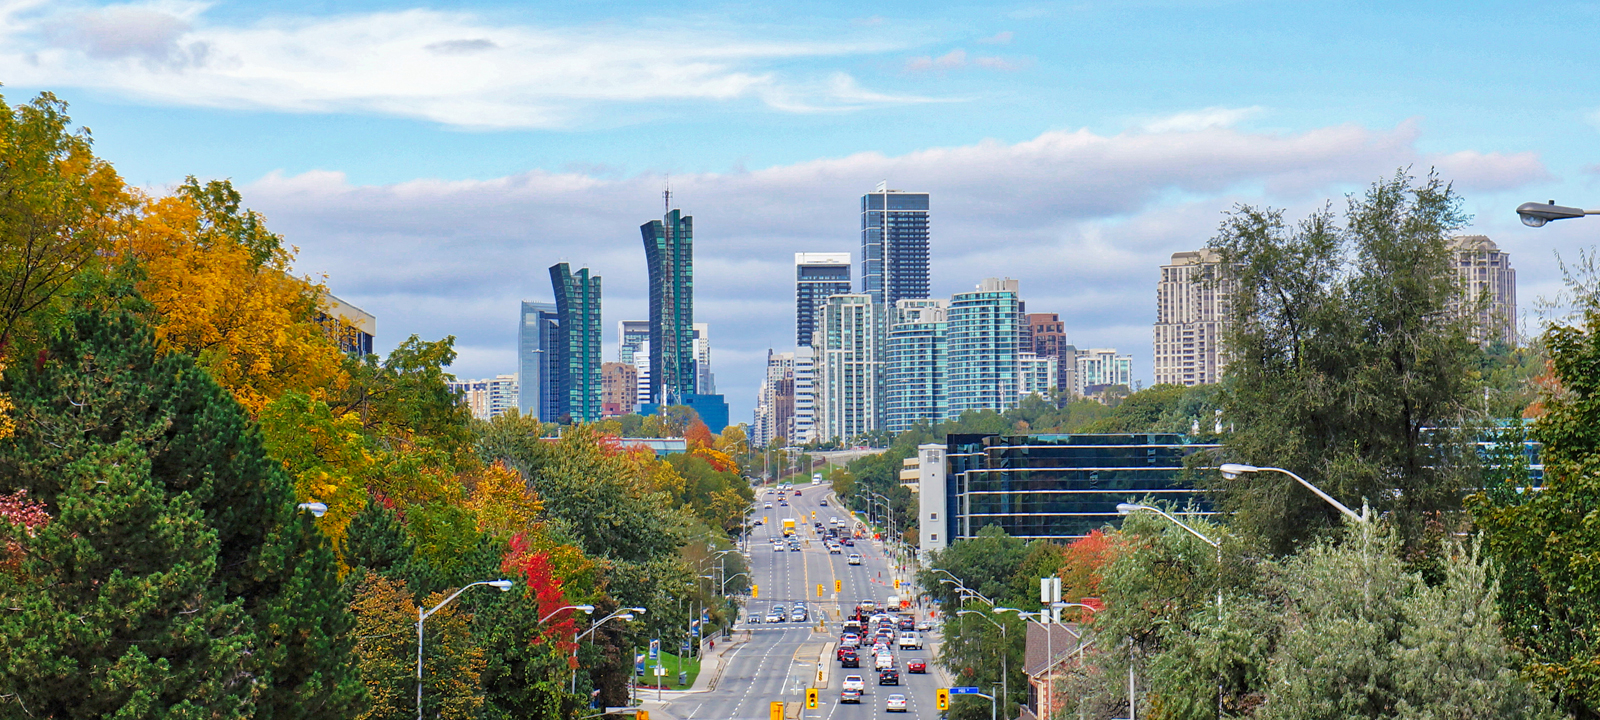 Toronto, Panoramic View of city of North York